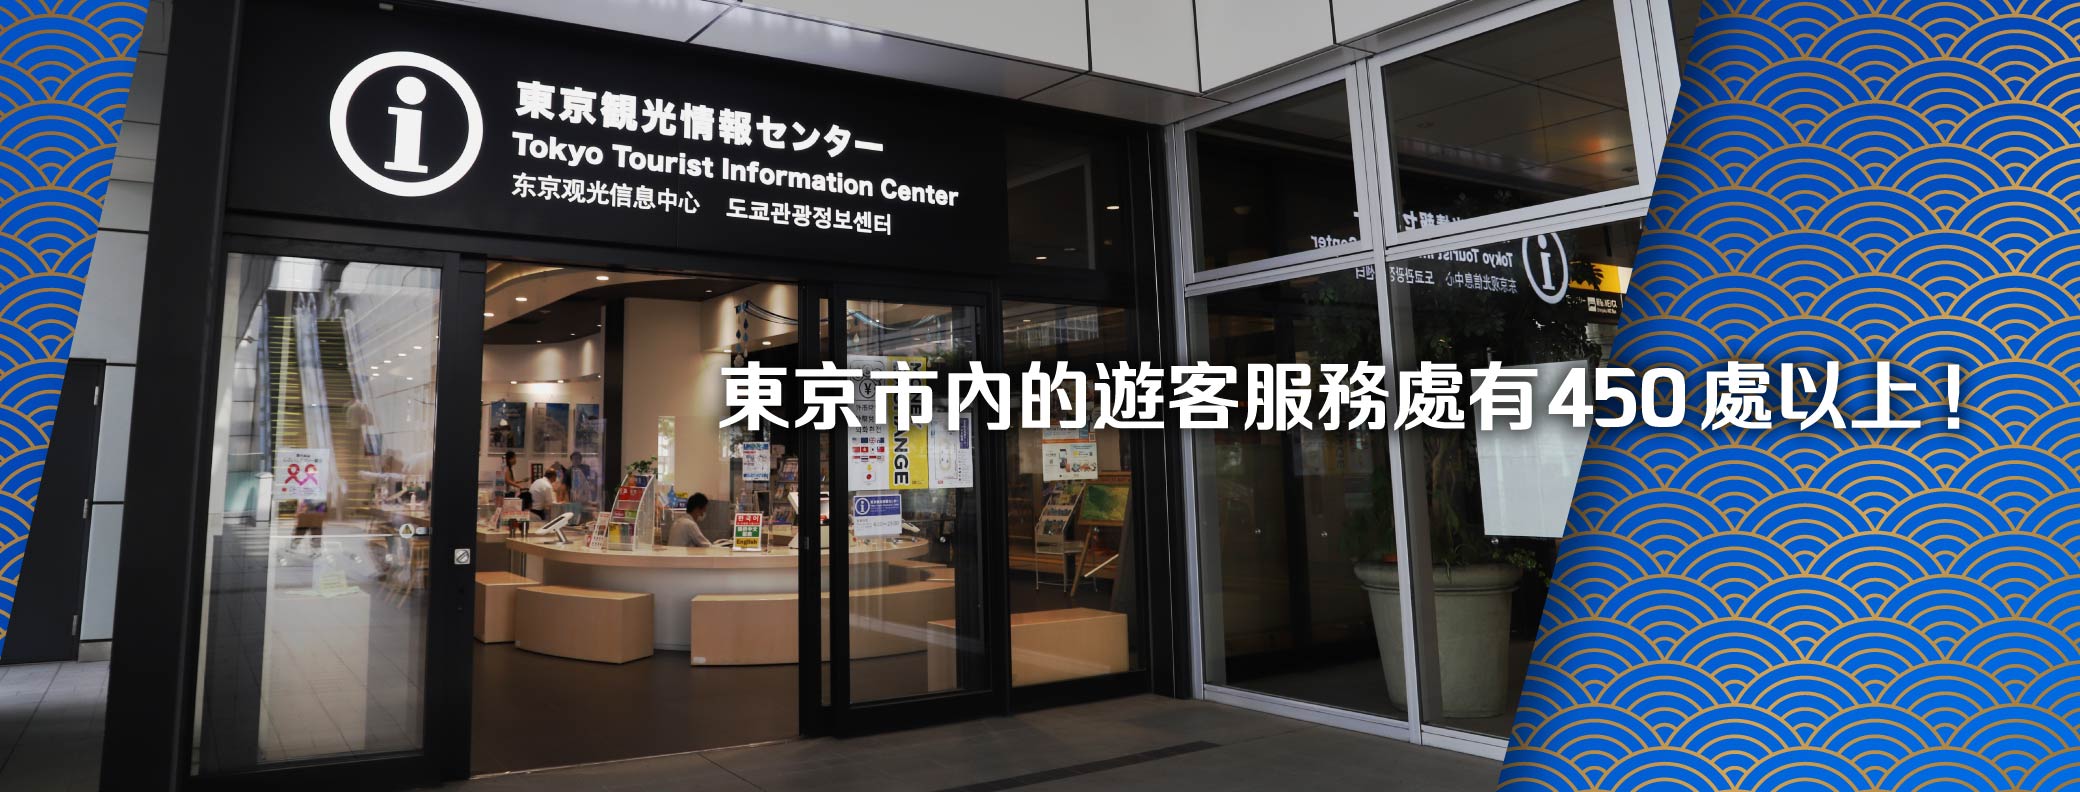 東京市內的遊客服務處有470處以上！